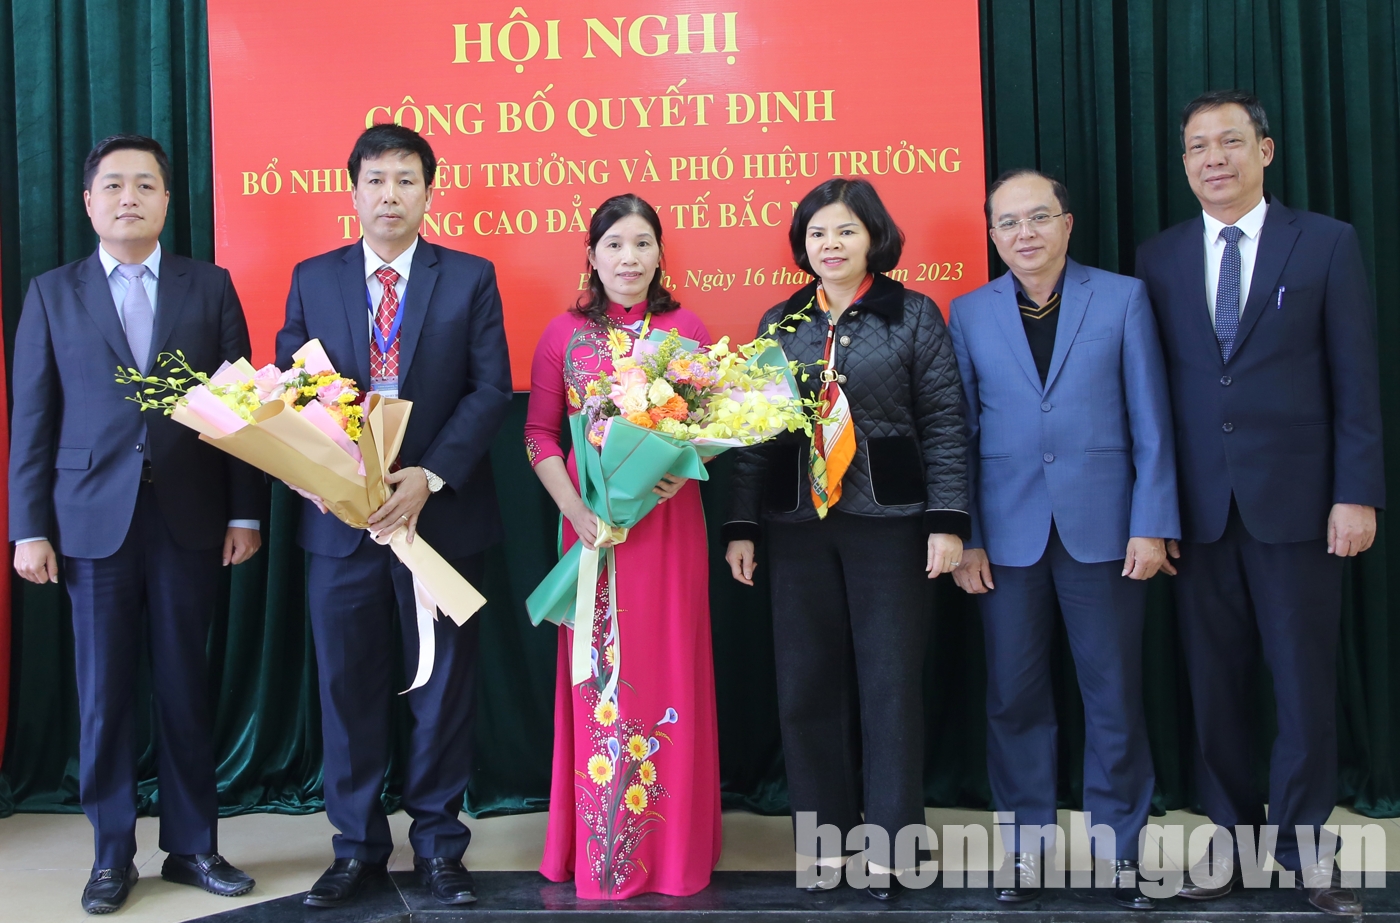 Công bố Quyết định bổ nhiệm Hiệu trưởng và Phó Hiệu trưởng Trường Cao đẳng  Y tế Bắc Ninh